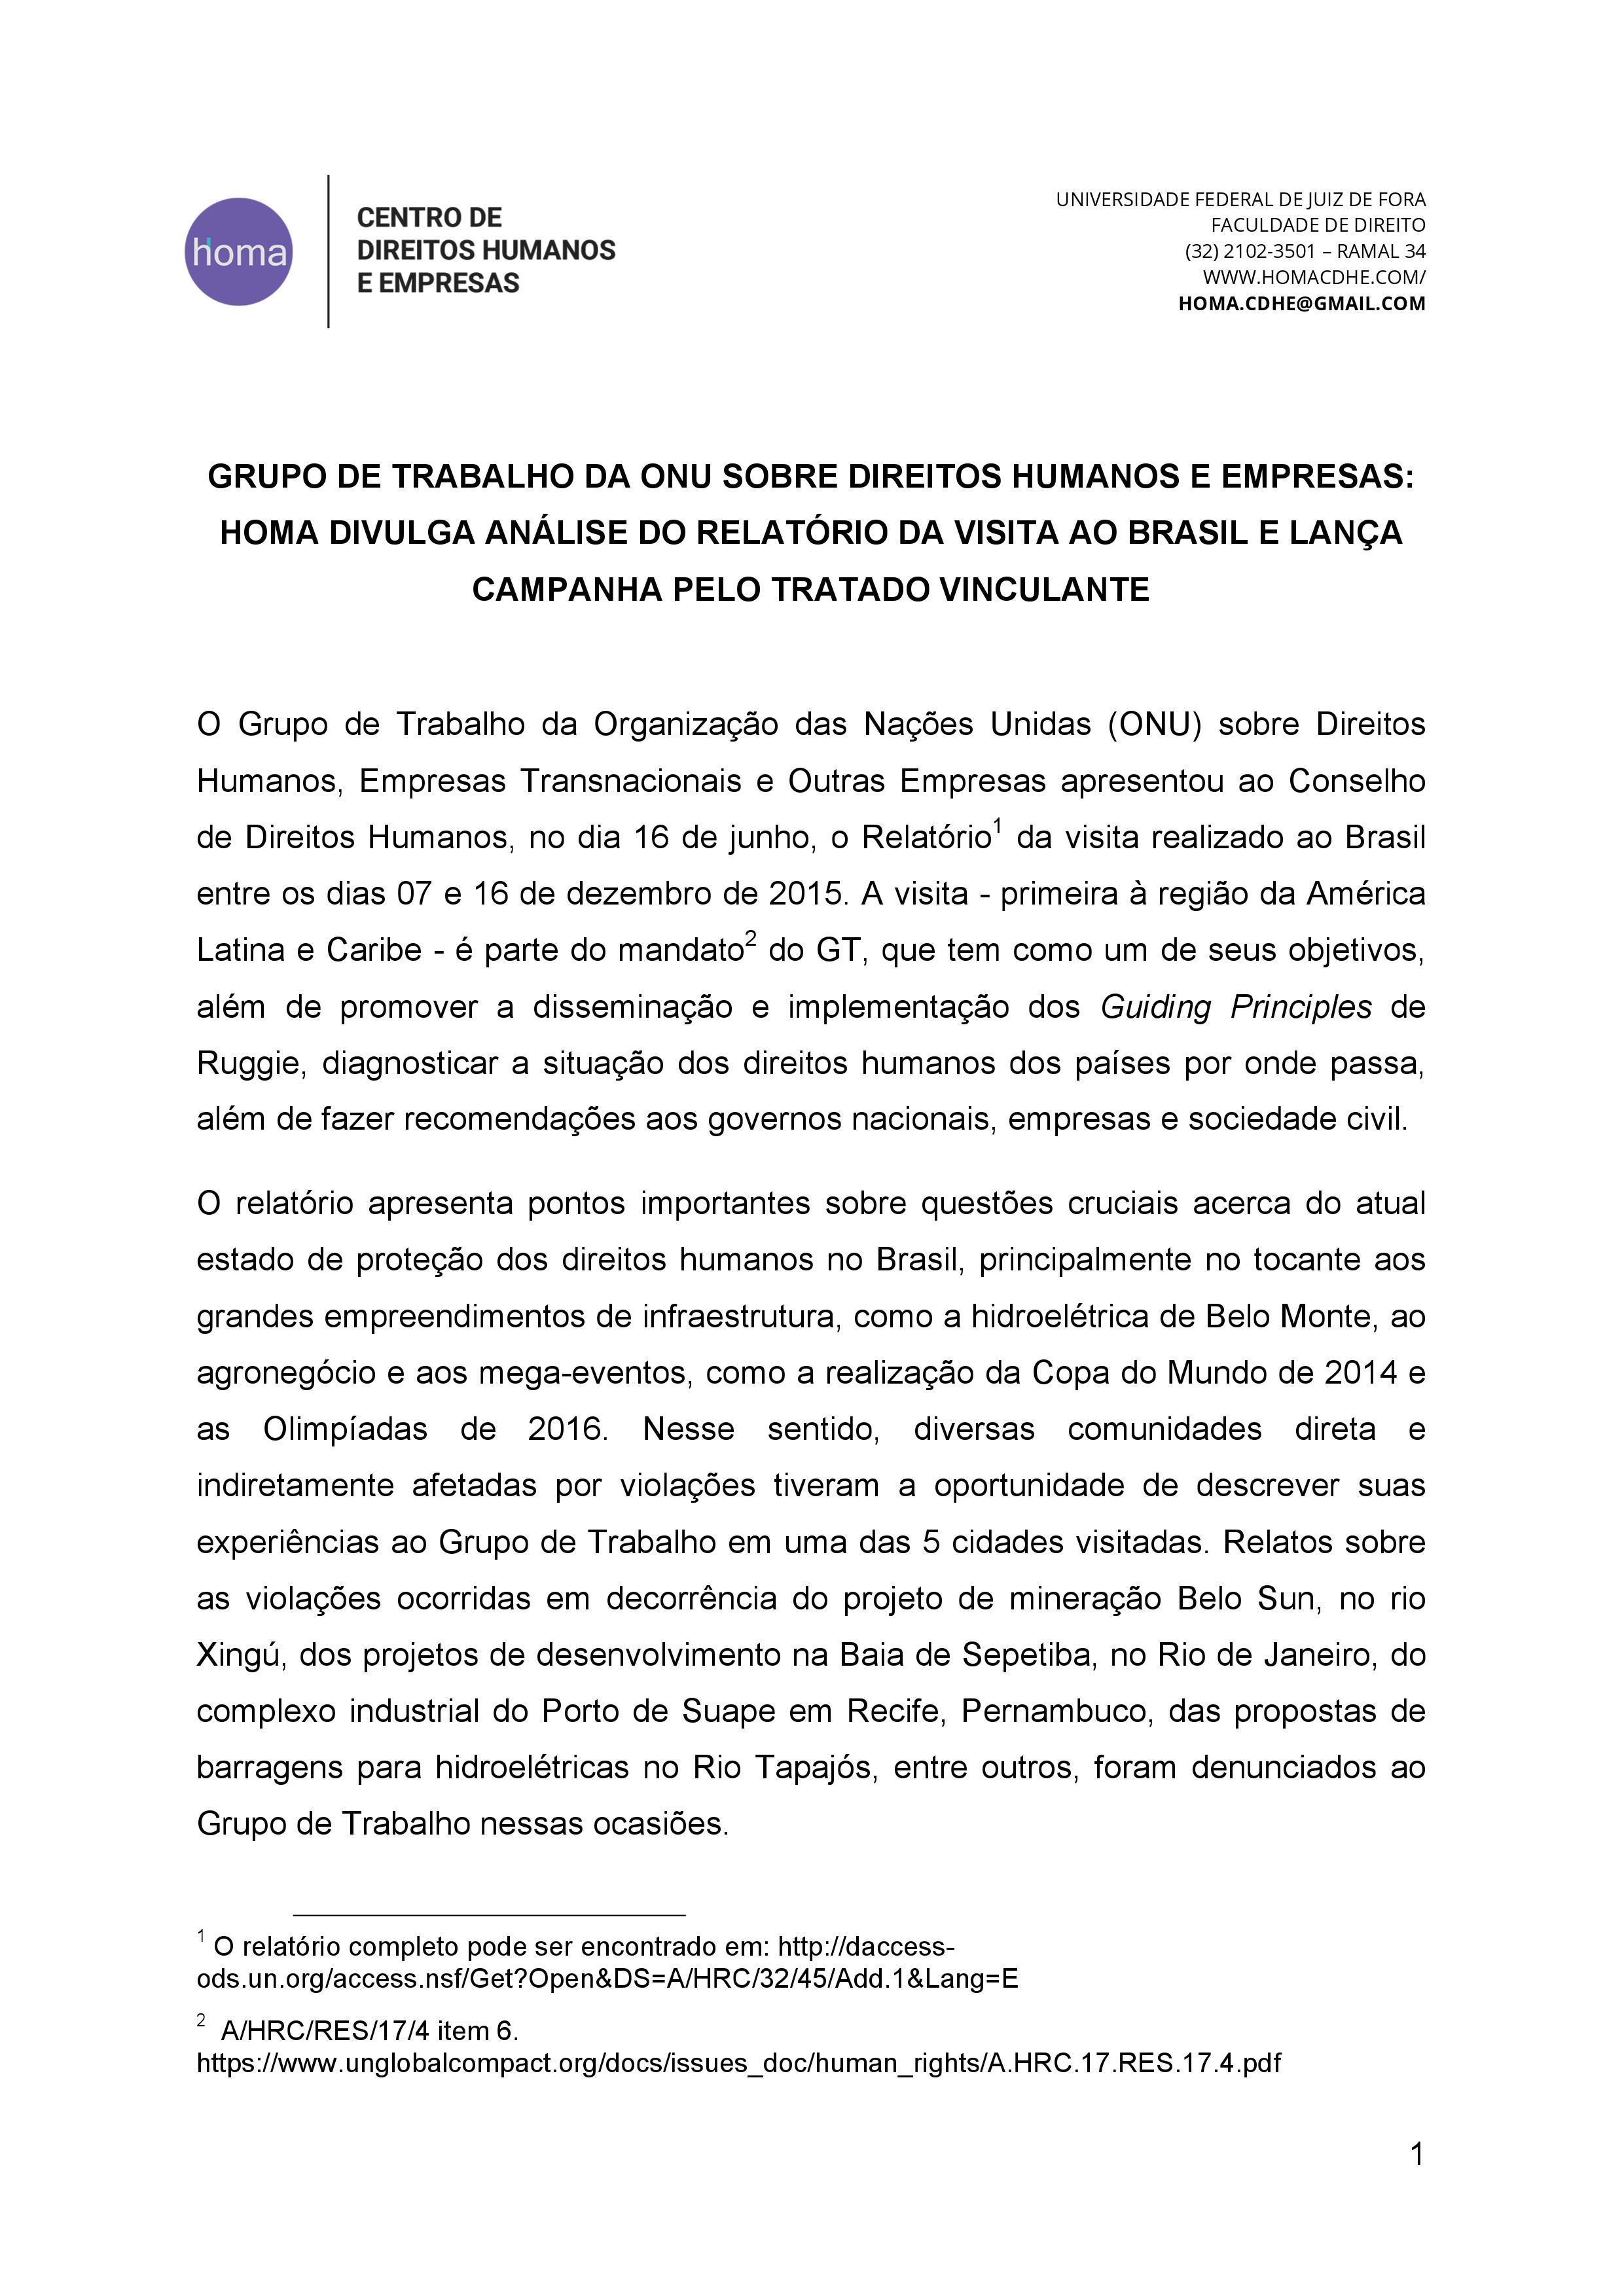 Grupo de trabalho da ONU sobre direitos humanos e empresas: análise do relatório da visita ao Brasil